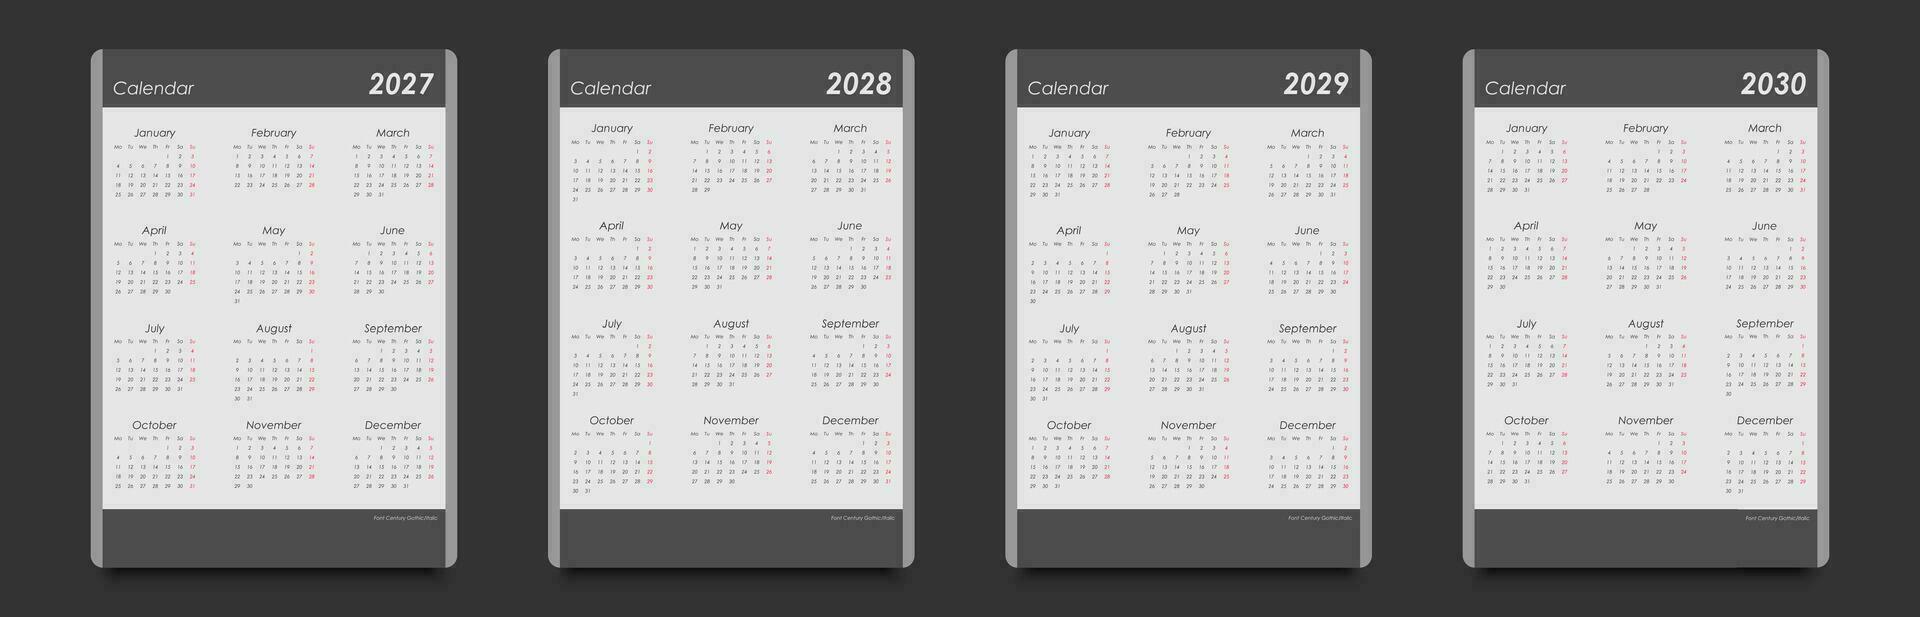 calendários para 2027, 2028, 2029, 2030. semana começa em segunda-feira, vertical arranjo, Preto e branco. vetor